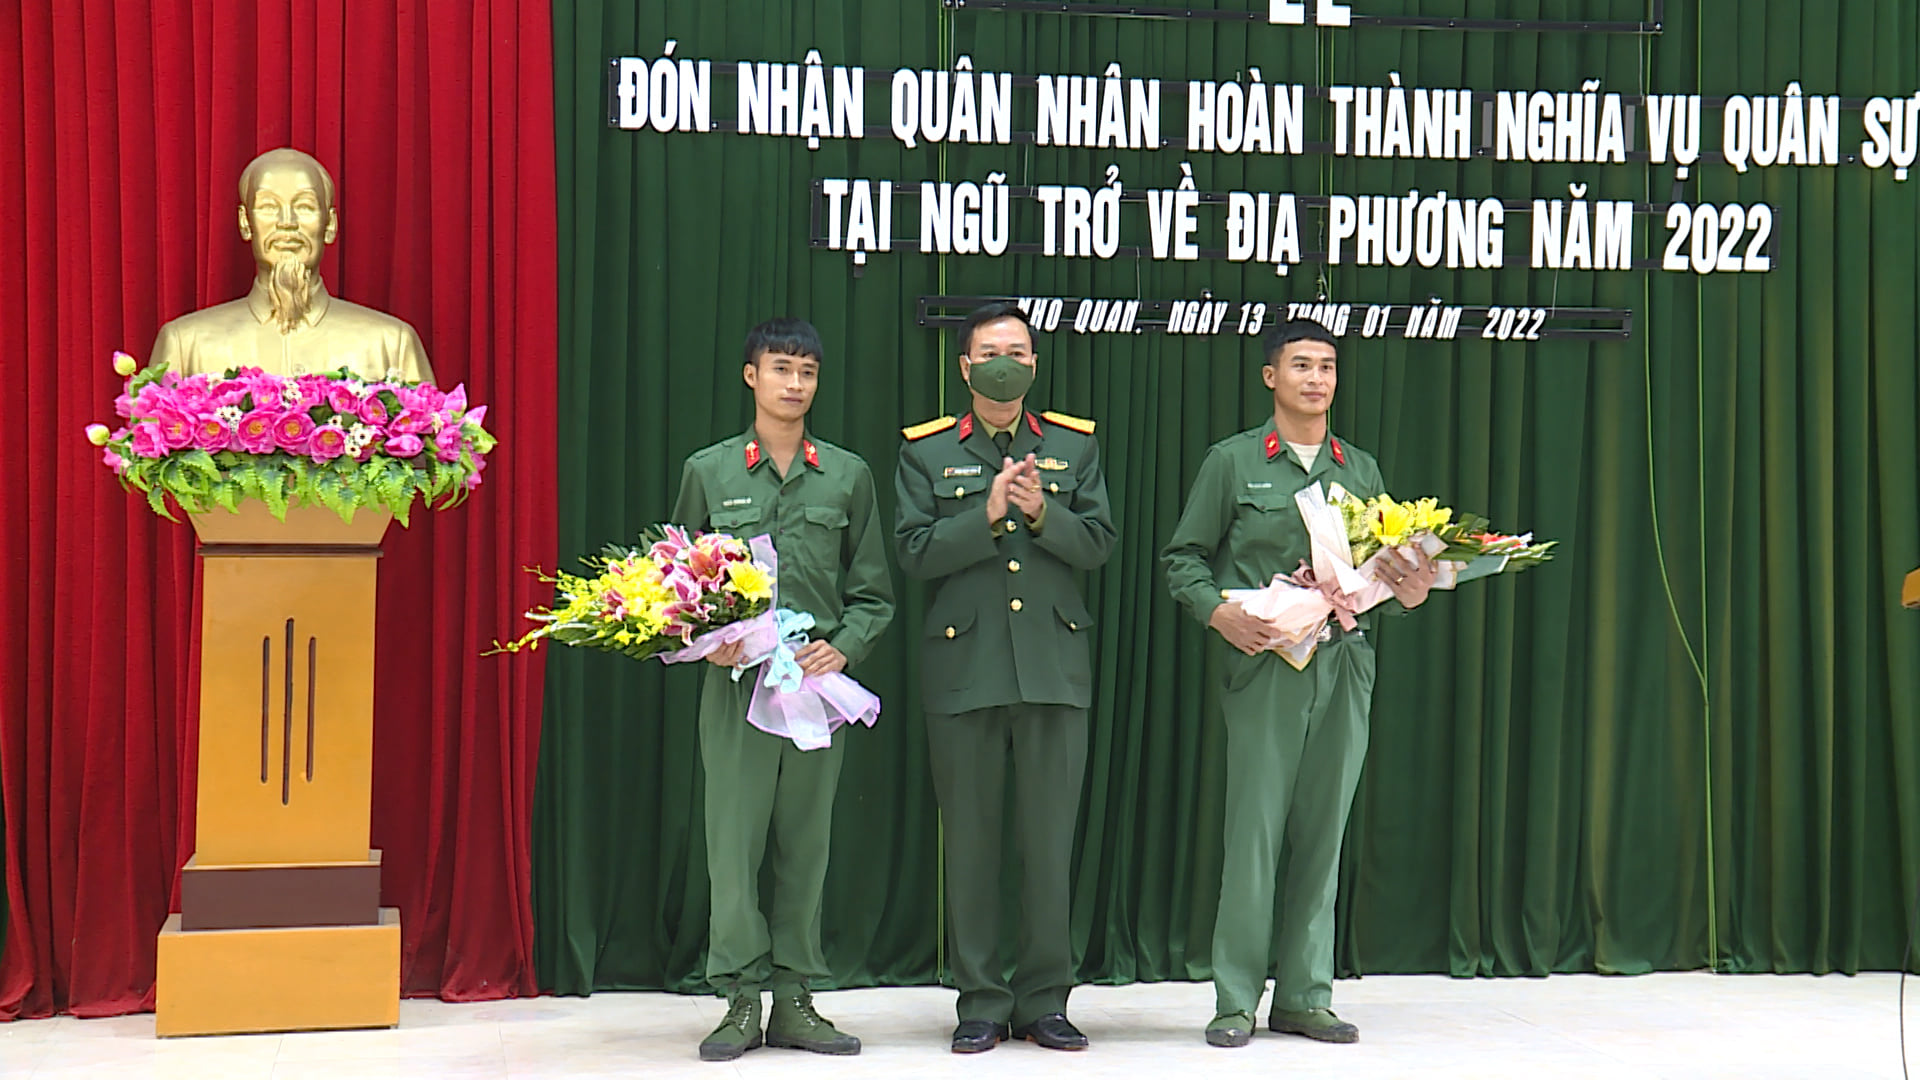 Nho Quan đón nhận quân nhân hoàn thành nghĩa vụ quân sự trở về địa phương